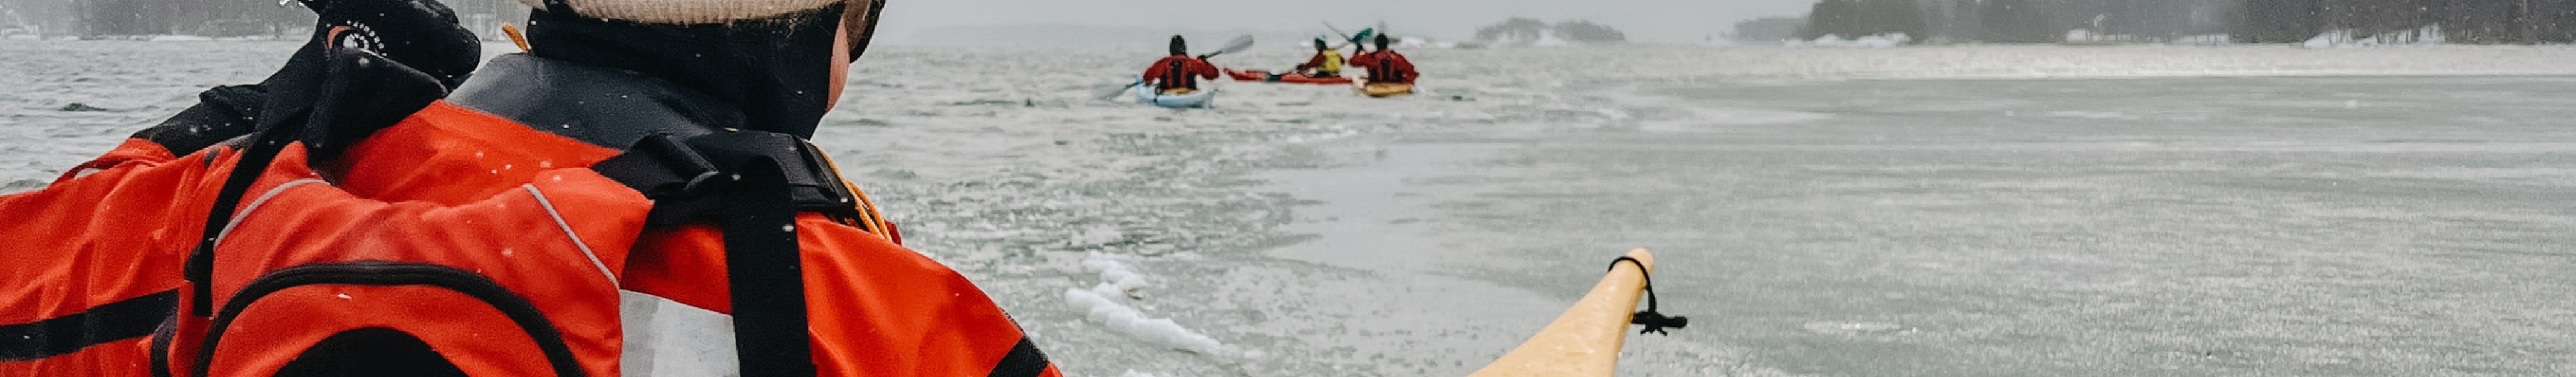 Group kayaking in winter